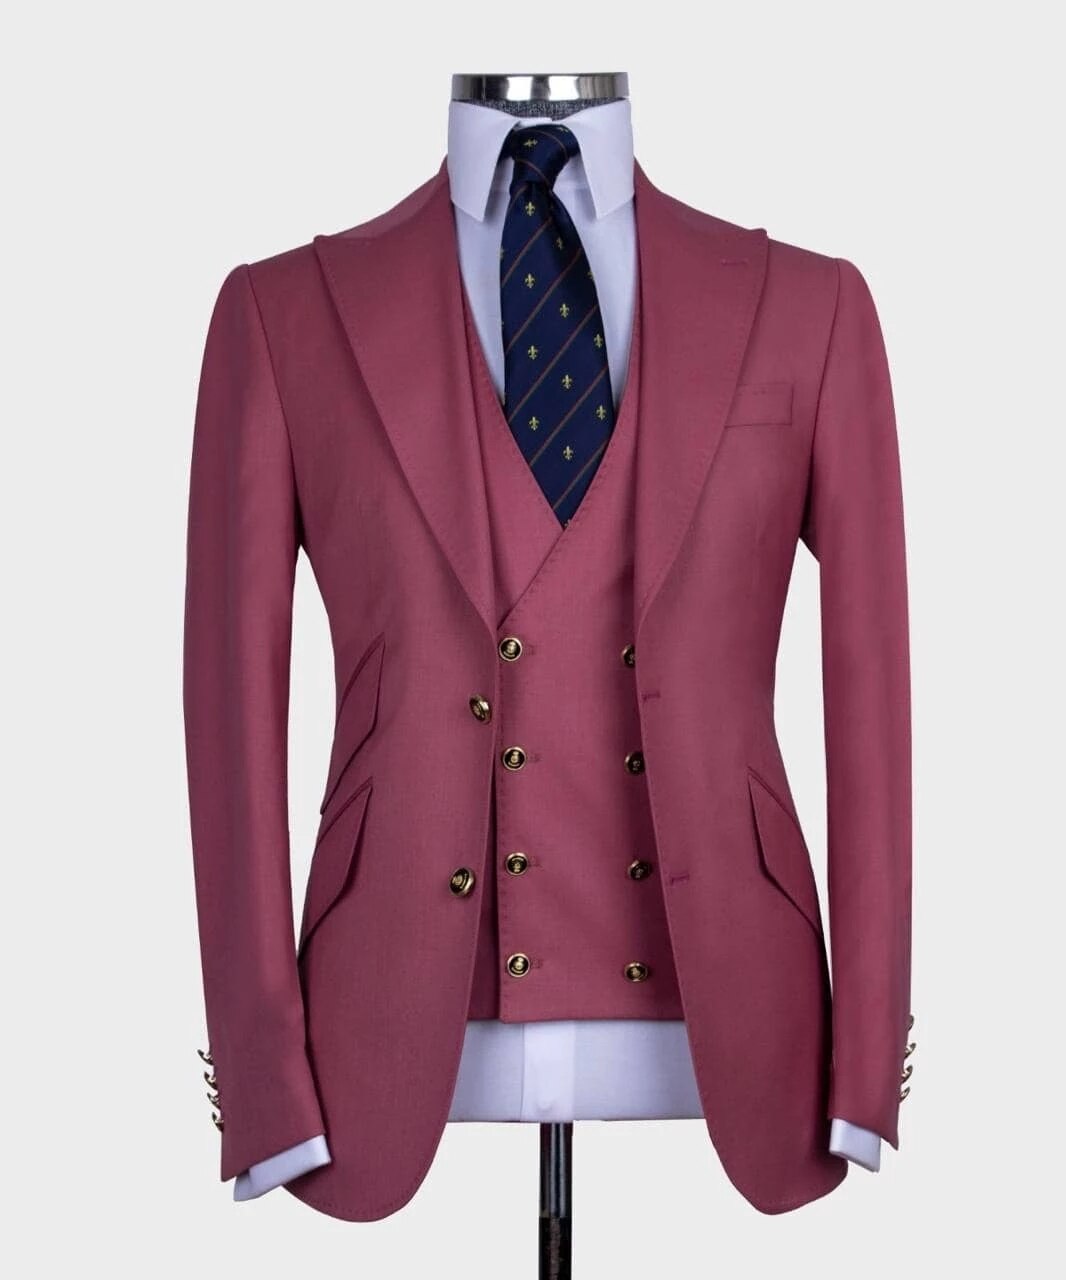 7 Colors Business Men Suits Peak Lapel Costume Homme Groom Tuxedos Terno Slim Fit Prom Blazer 3 Pcs Jacket+Pant+Vest